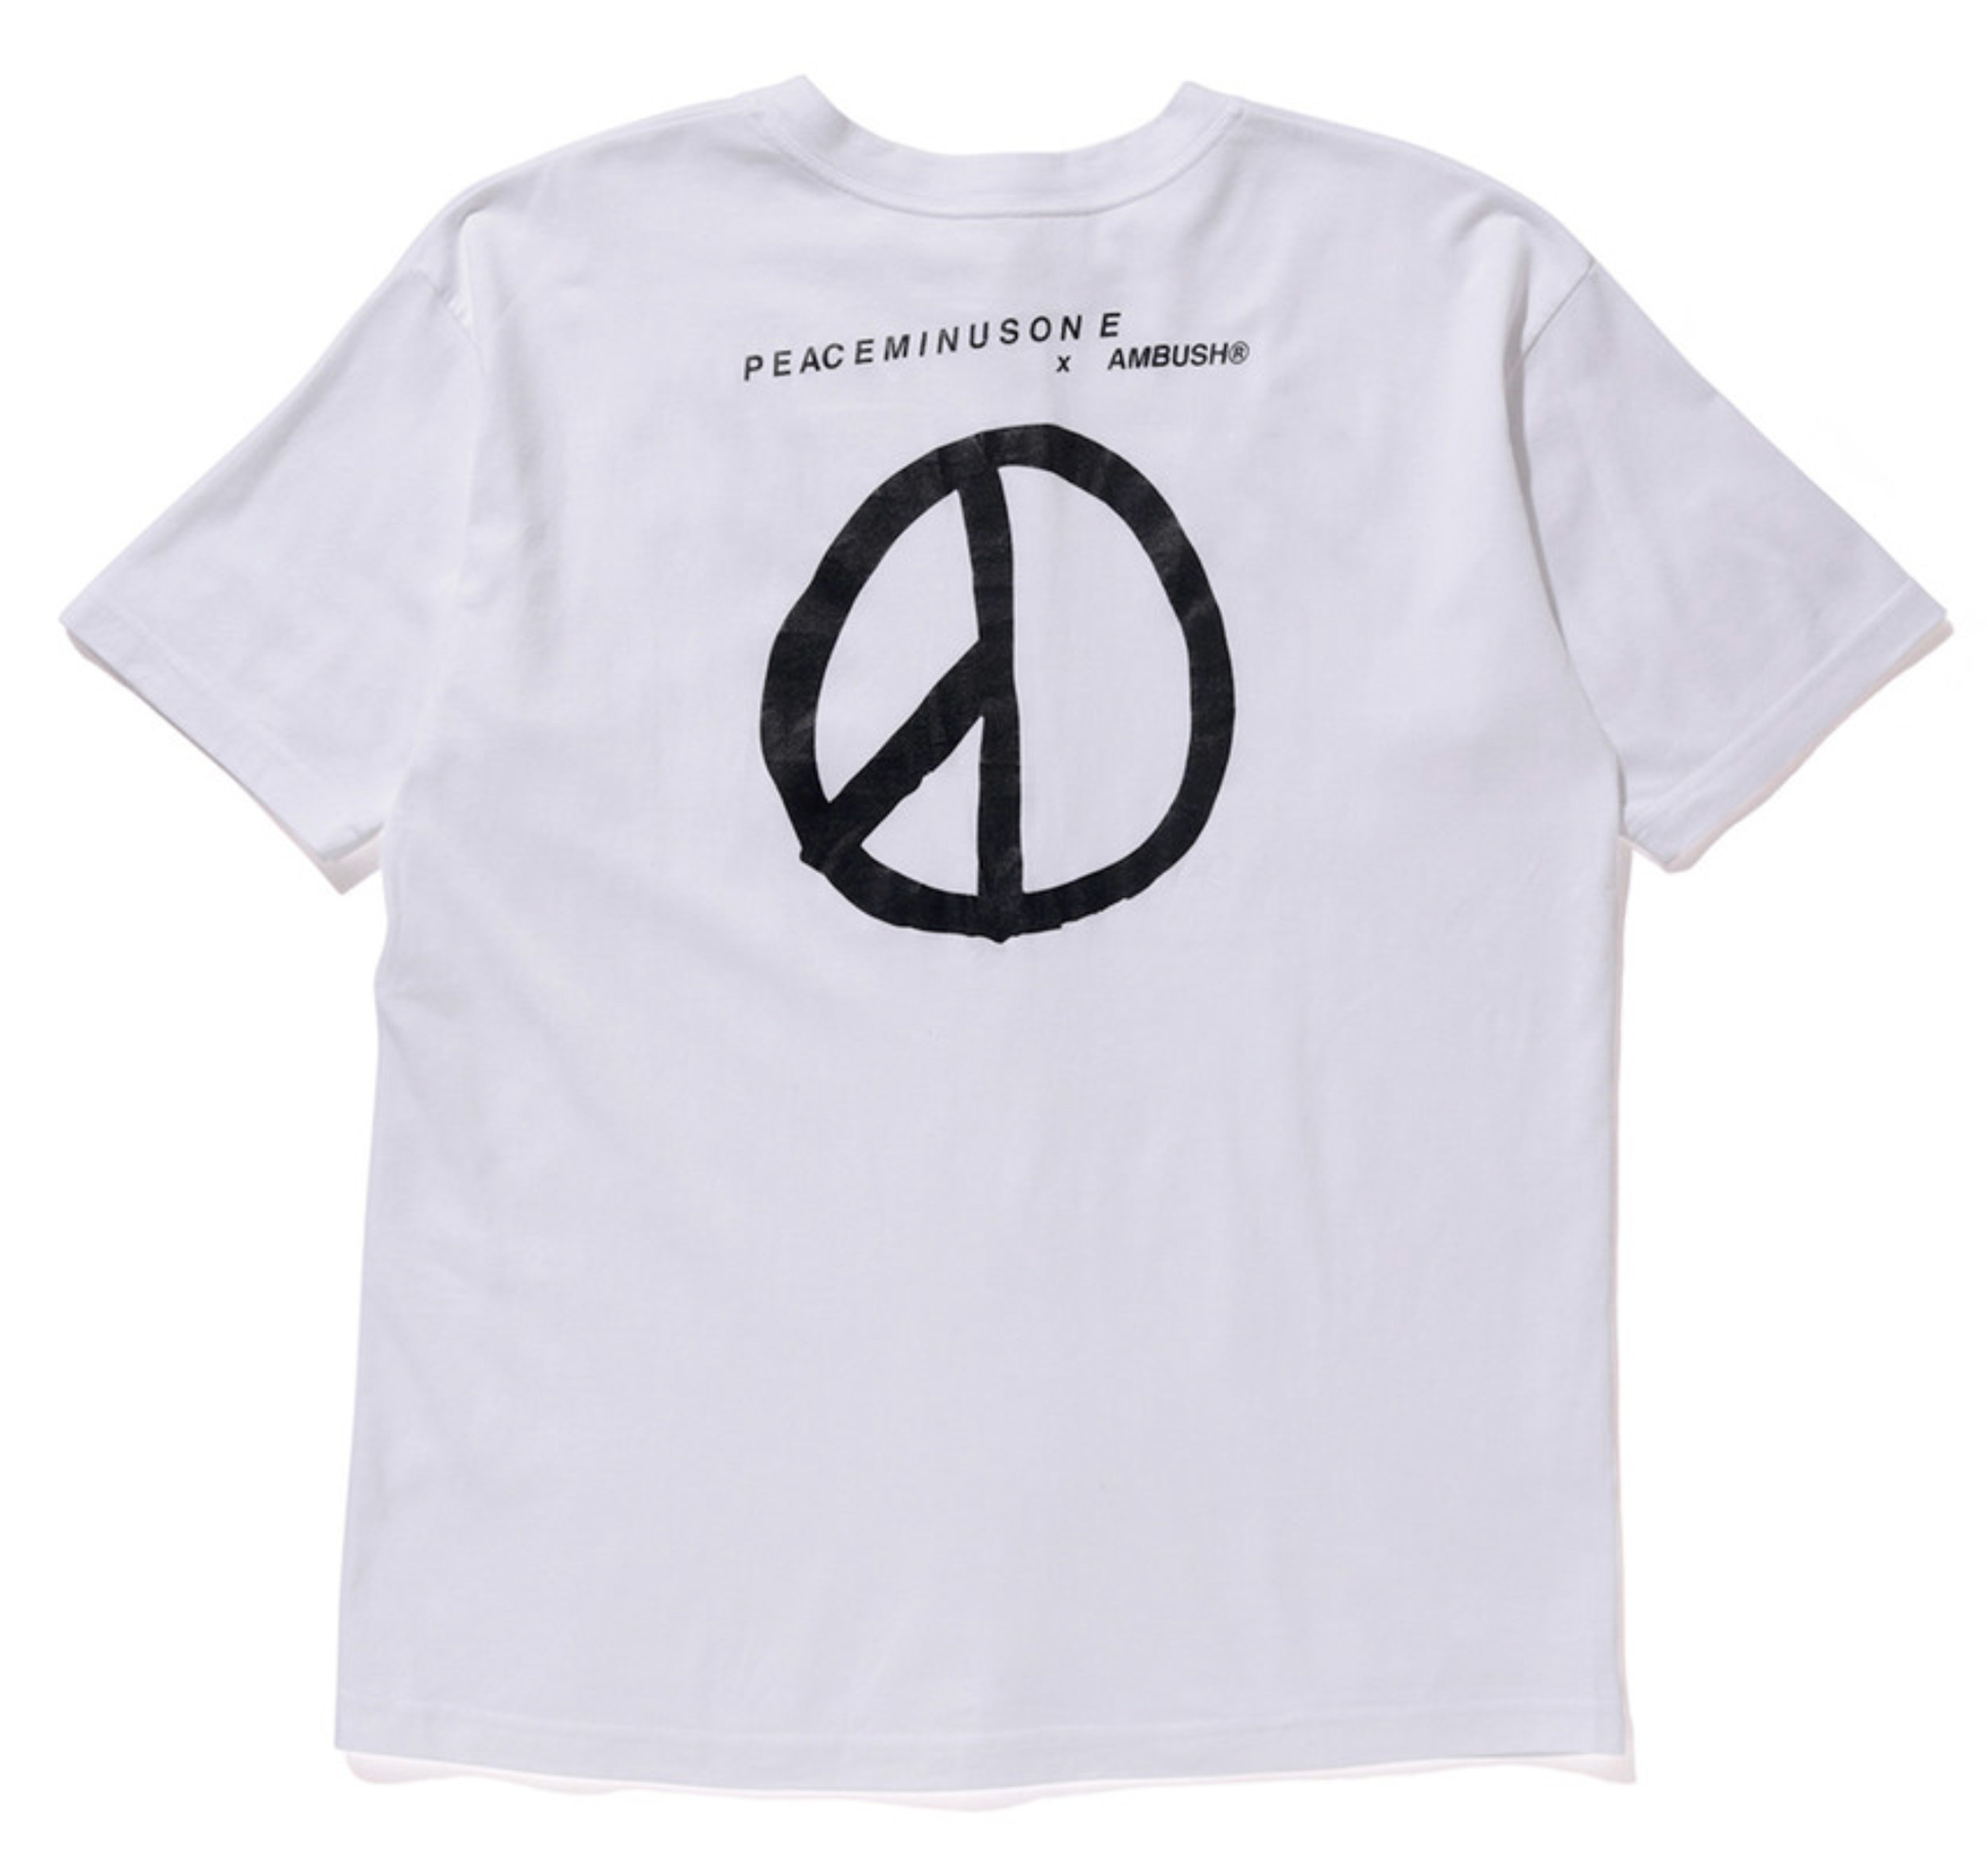 2016 - PEACEMINUSONE x Ambush - T-shirt - White — my BIGBANG collection